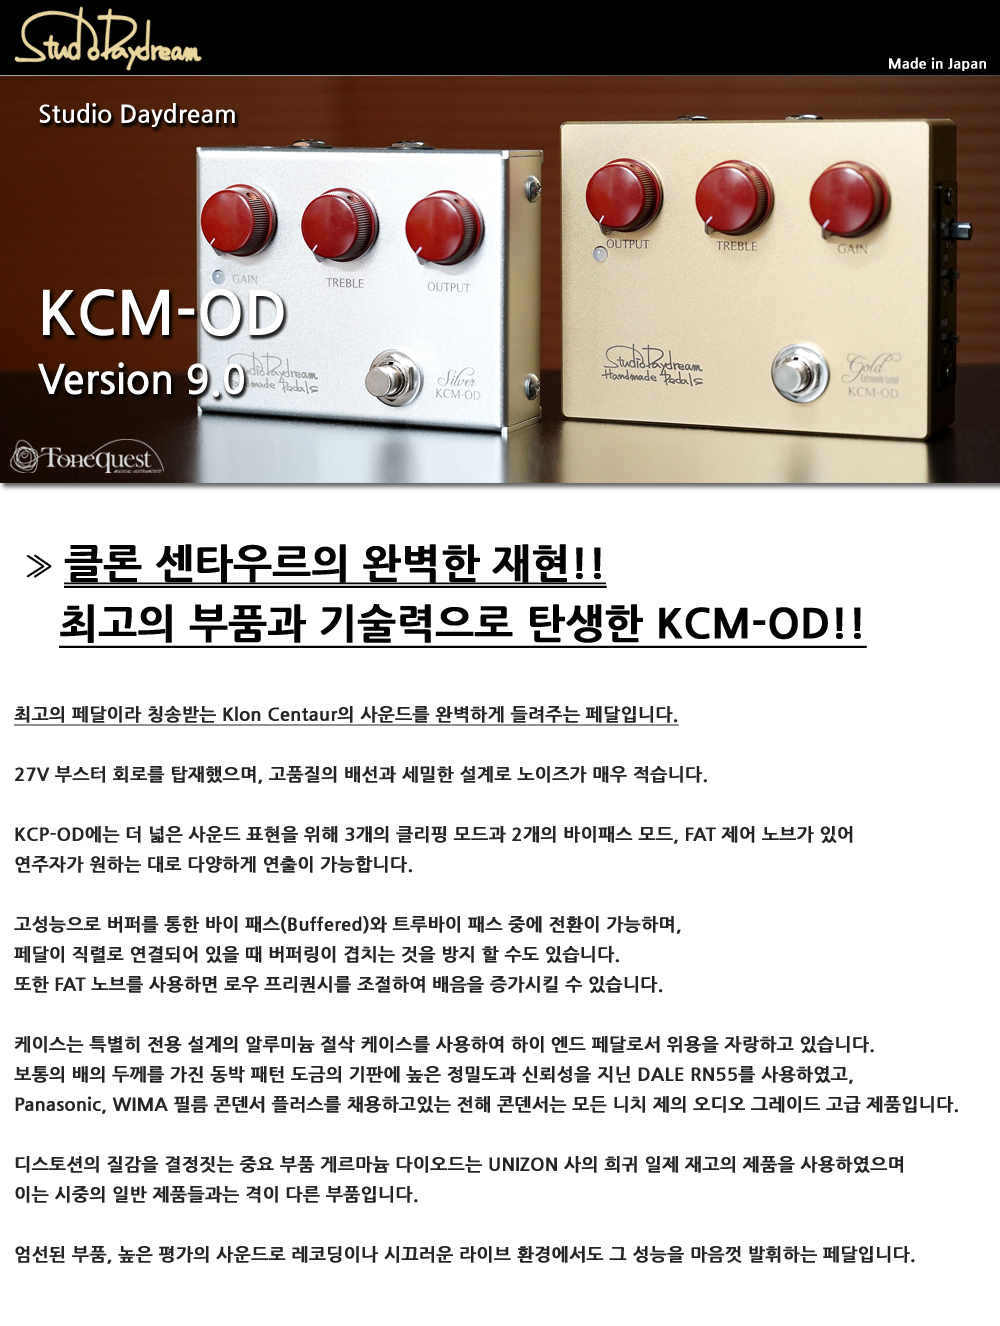 쇼핑몰 > 뉴스 > [Studio Daydream] KCM-OD V9.0 Gold - 전설의 클론